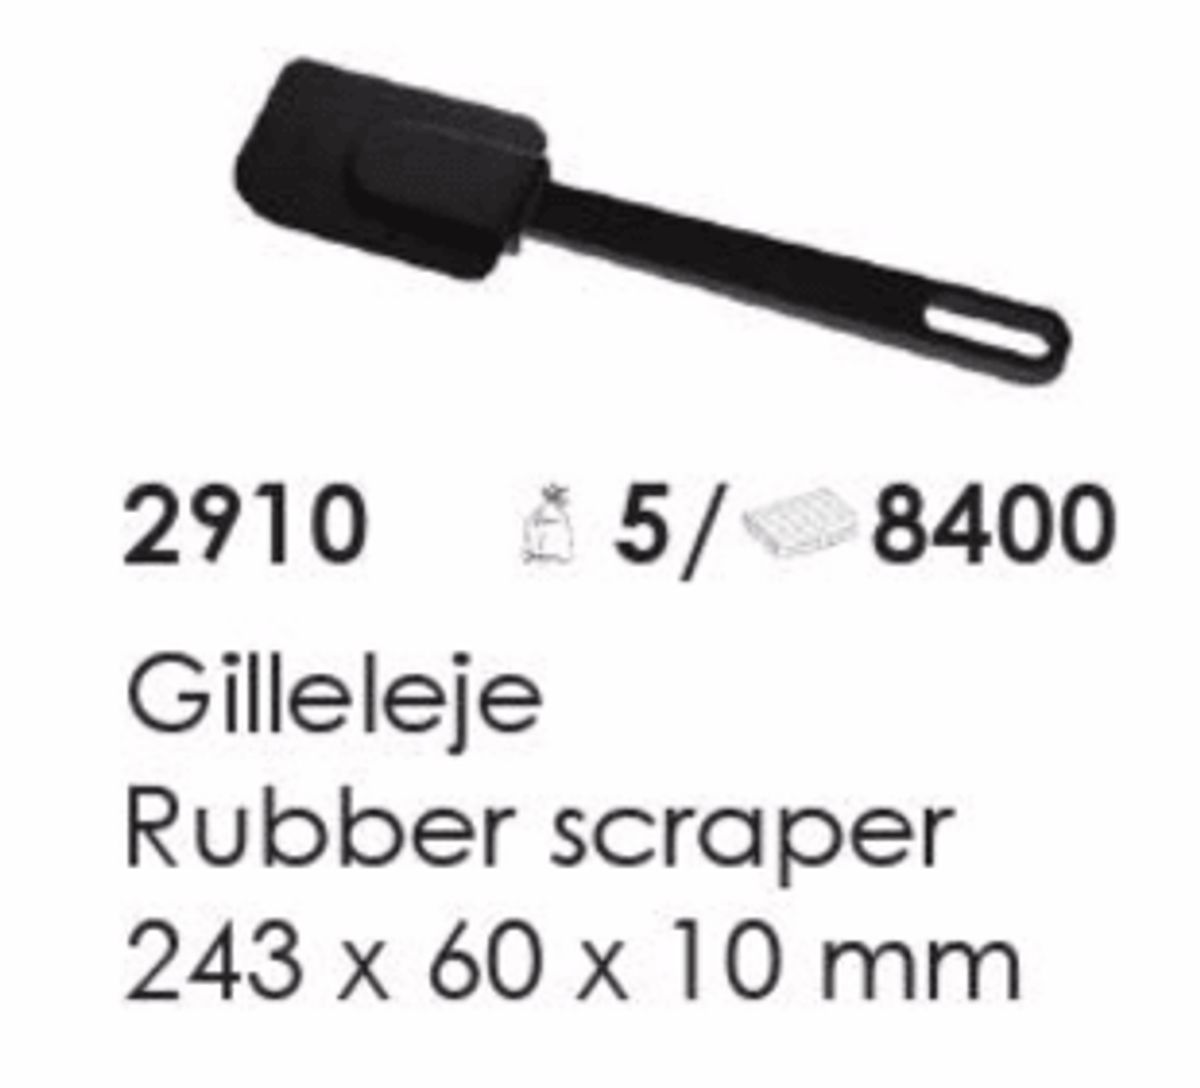 Gilleleje Rubber Scraper, artikel nr. 2910 (Gummi skraber) Foto: Screenshot fra katalog fra Plast Team A/S.